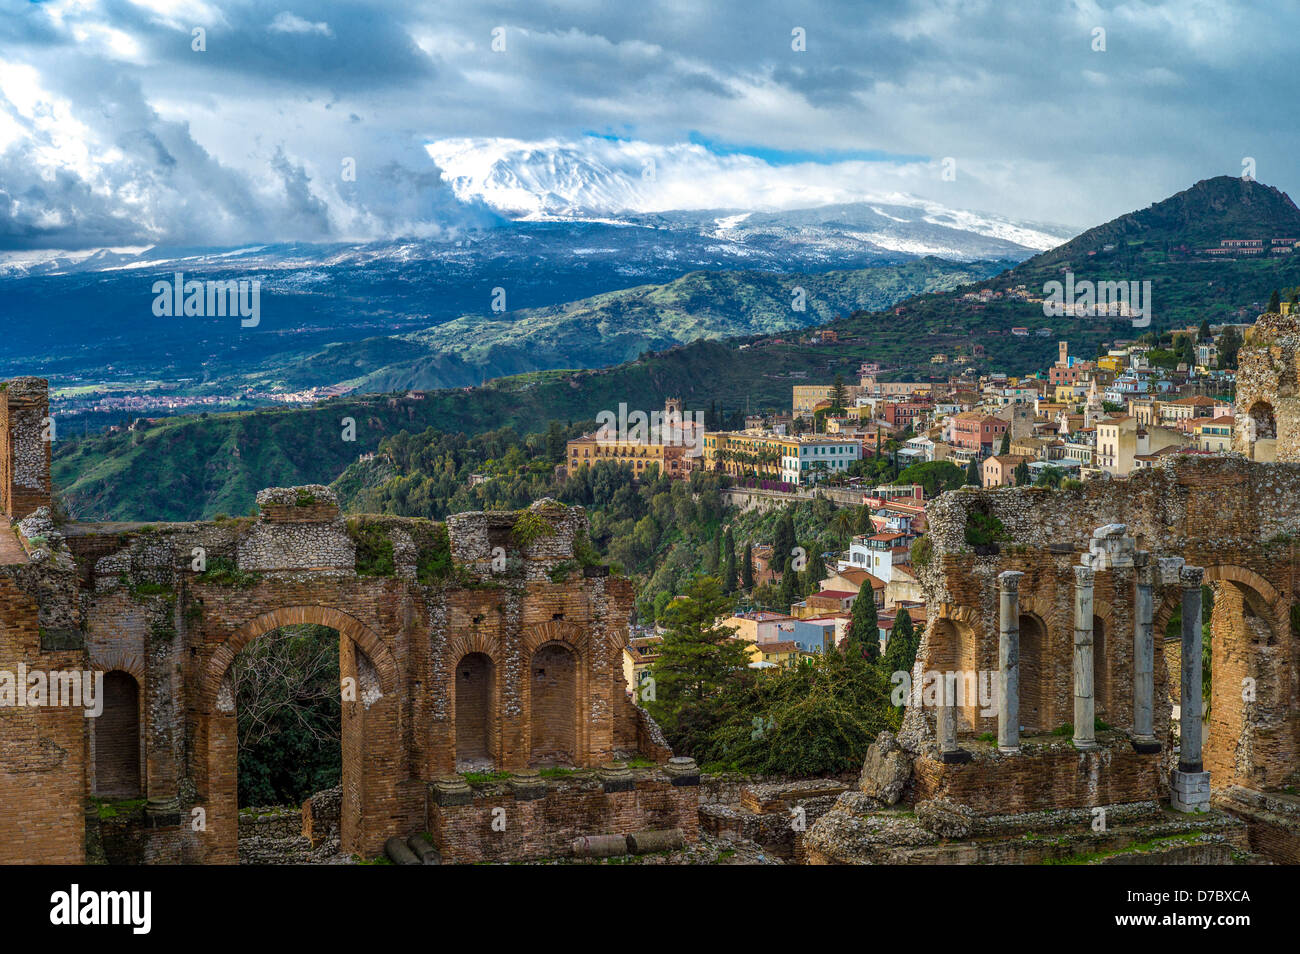 Europa, Italia, Sicilia, Taormina, el Teatro Griego y el paisaje en volcan Etna con nieve Foto de stock